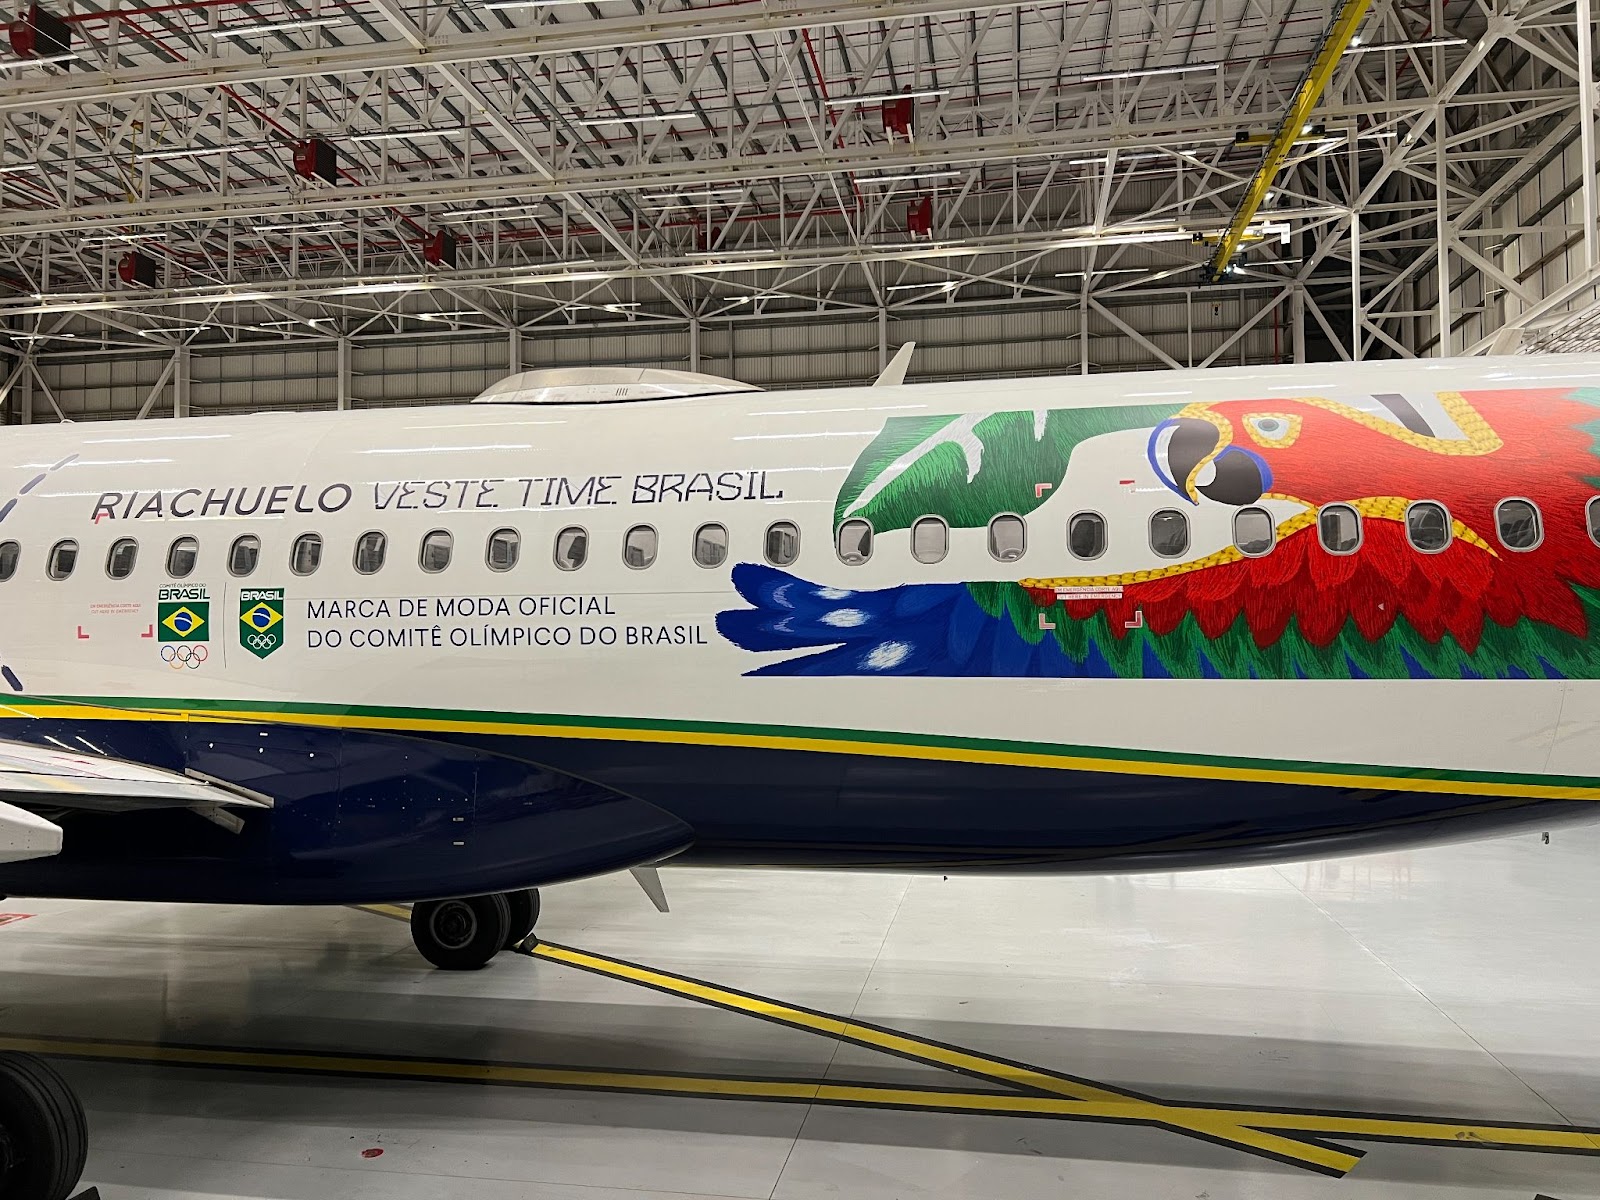 Riachuelo adesiva avião da Azul para apoiar atletas do Time Brasil nas Olímpiadas